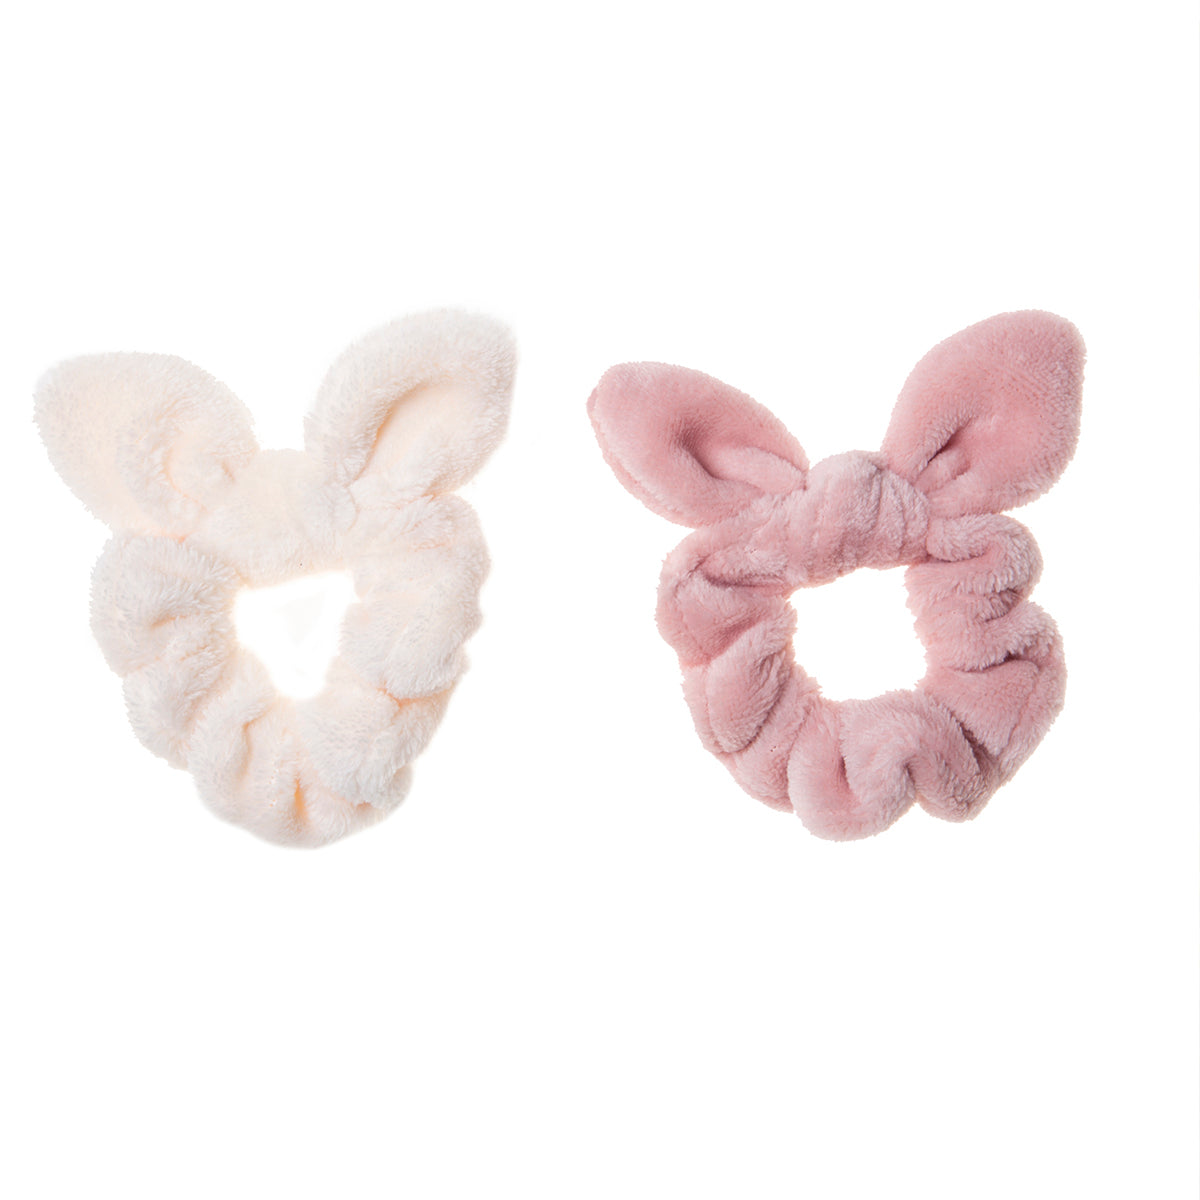 Kijk eens wat een superschattige fluffy scrunchies met konijnenoren van Rockahula! Functioneel en hip, in de kleuren wit en donkerroze. Een musthave haar accessoire voor kindjes die houden van konijntjes. VanZus